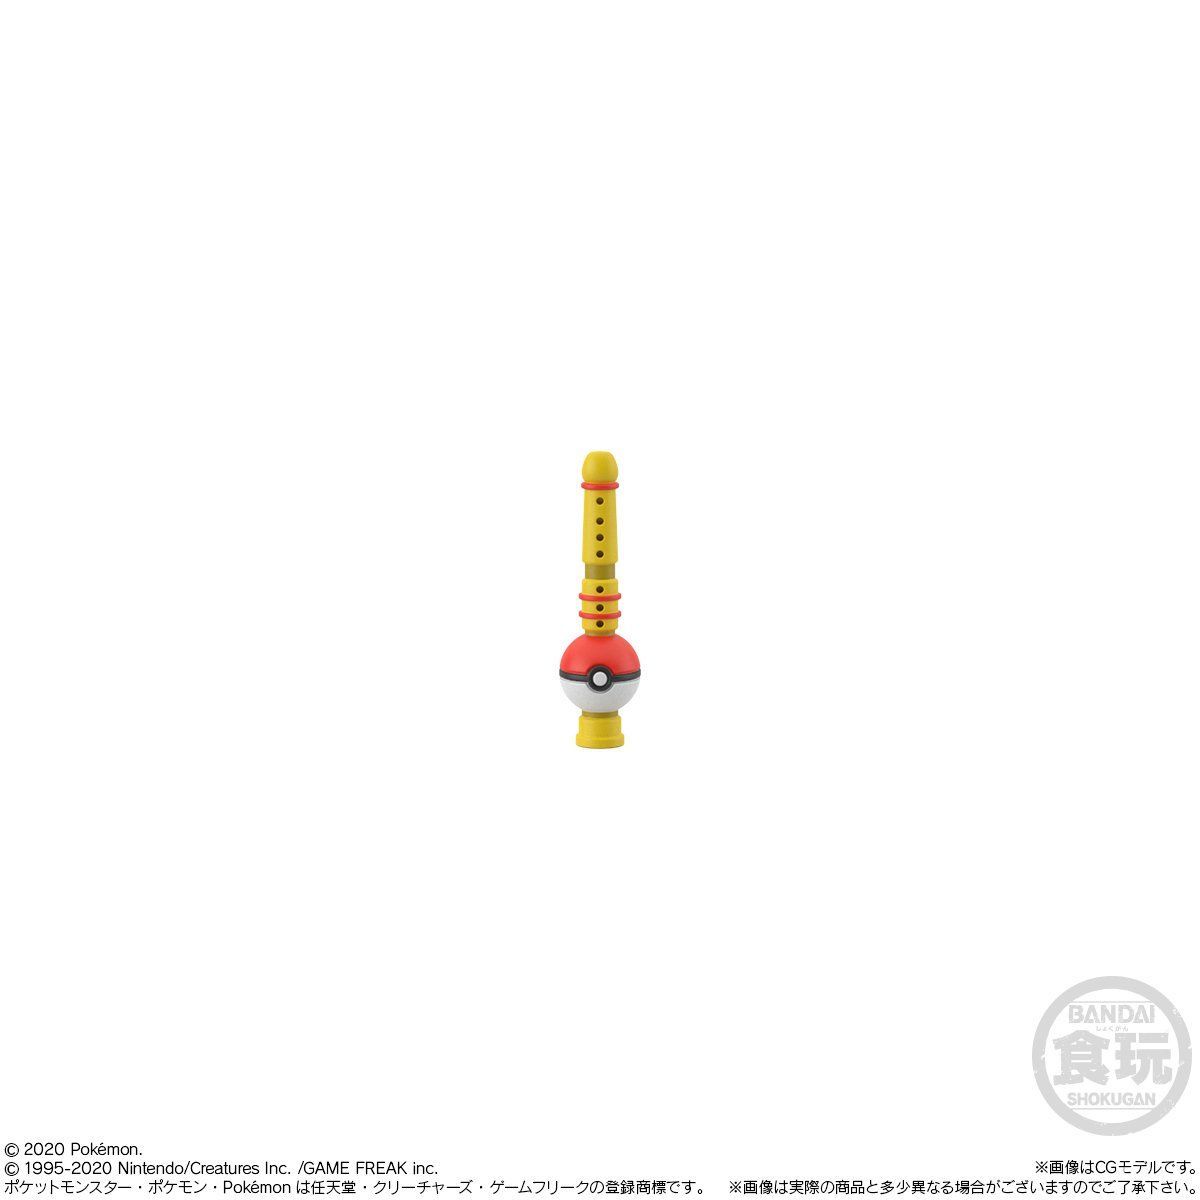 ポケモンスケールワールド カントー地方 レッド カビゴン ポケモンの笛 発売日 2020年8月 バンダイ キャンディ公式サイト